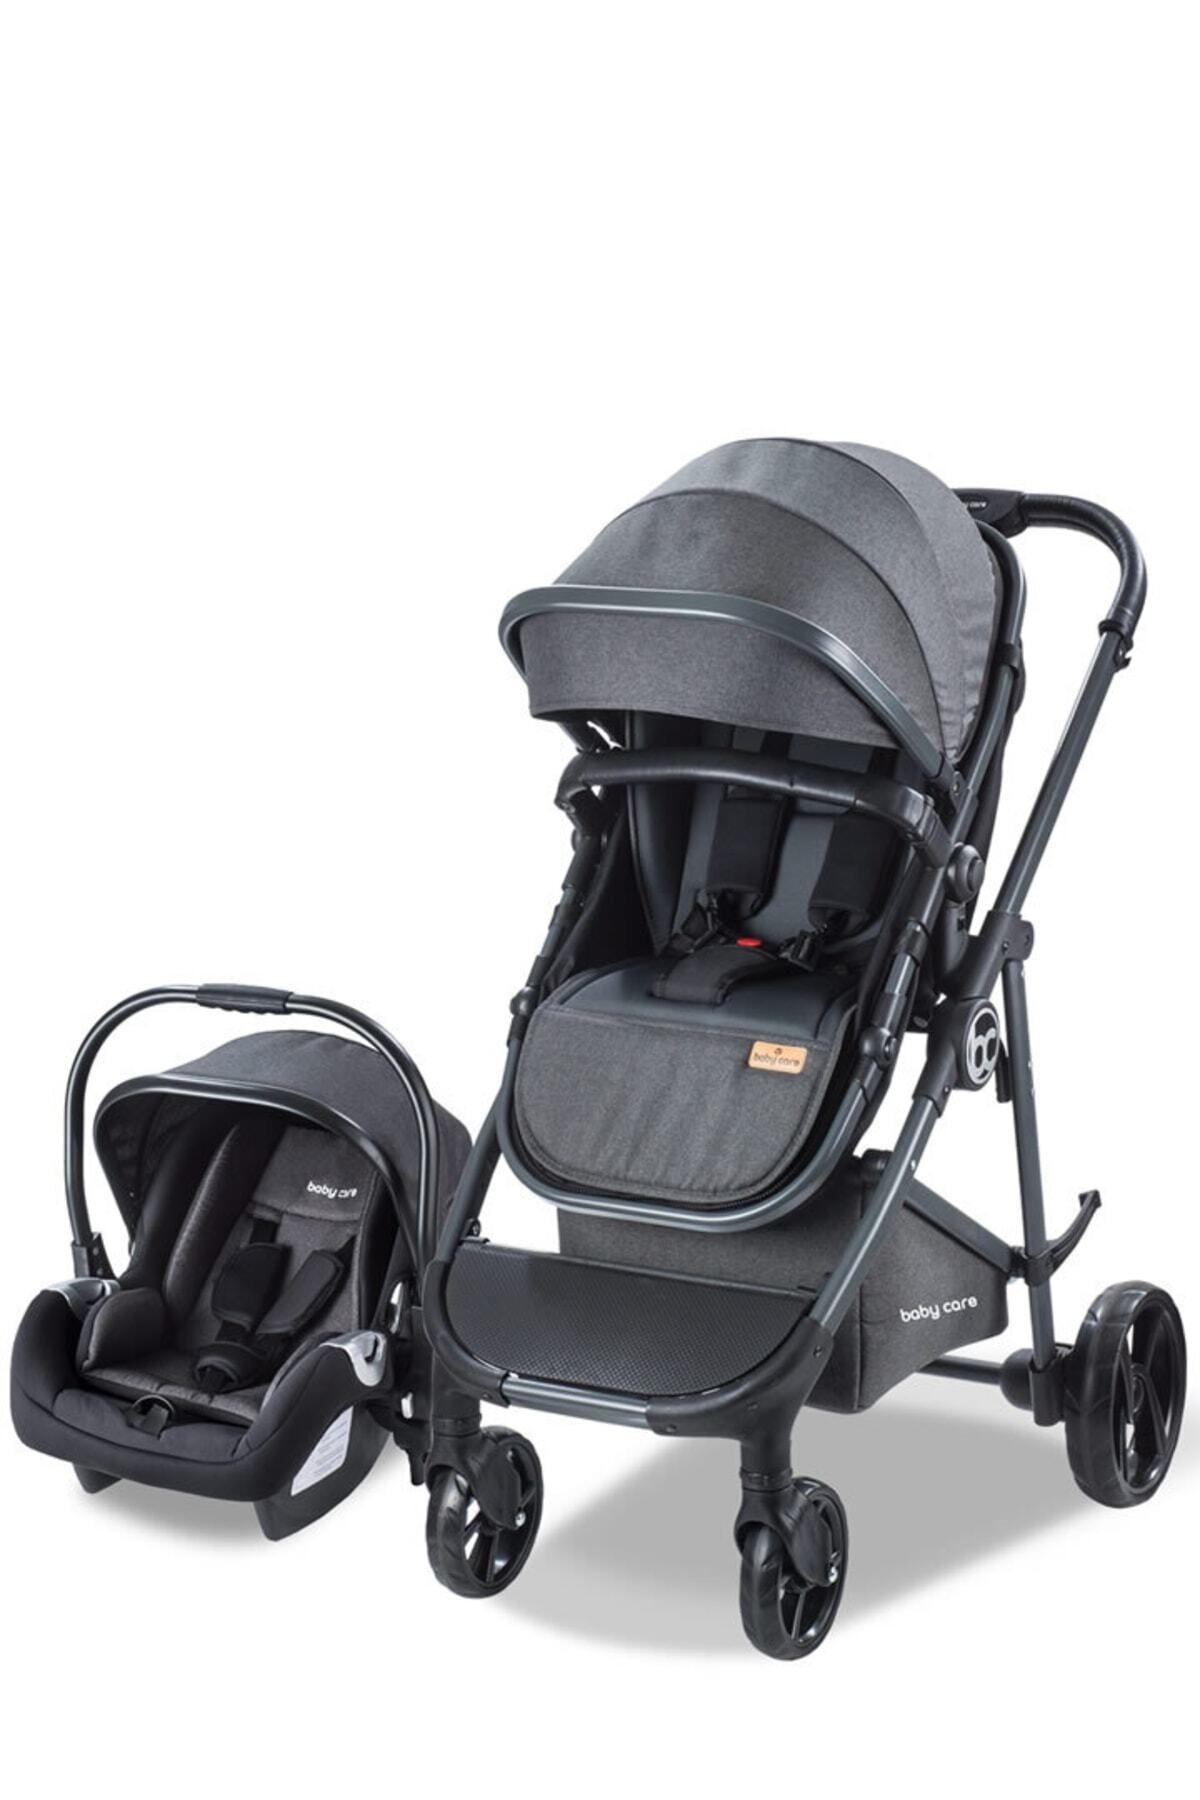 Baby Care Bc 300 Exen - Travel Sistem Bebek Arabası (SİYAH)